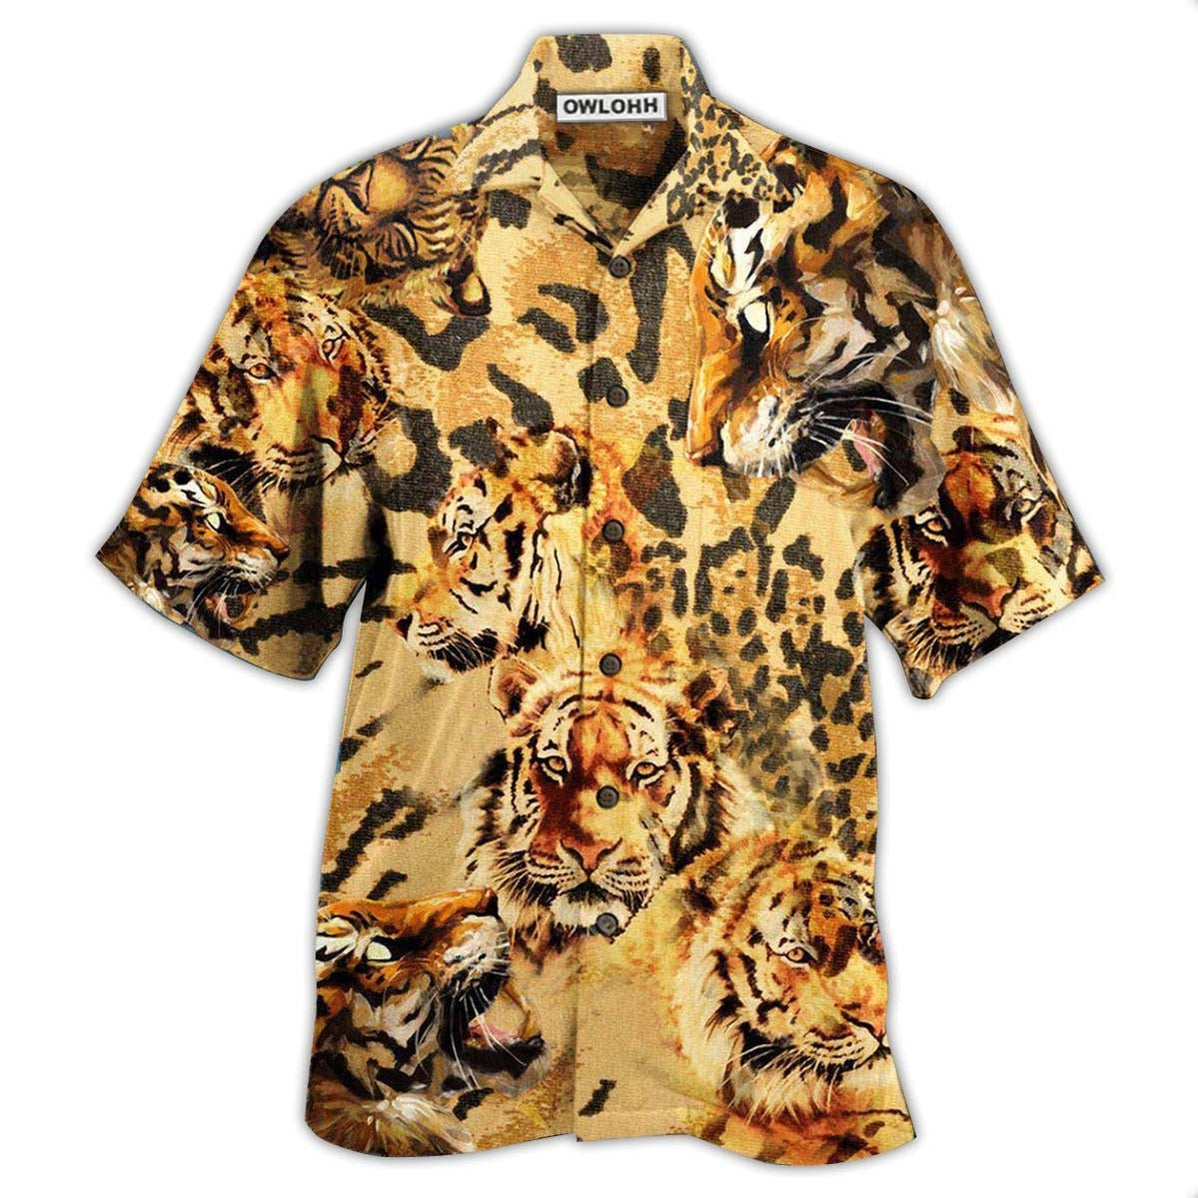 Hawaiian Shirt / Adults / S Tiger Stay Cool - Hawaiian Shirt - Owls Matrix LTD